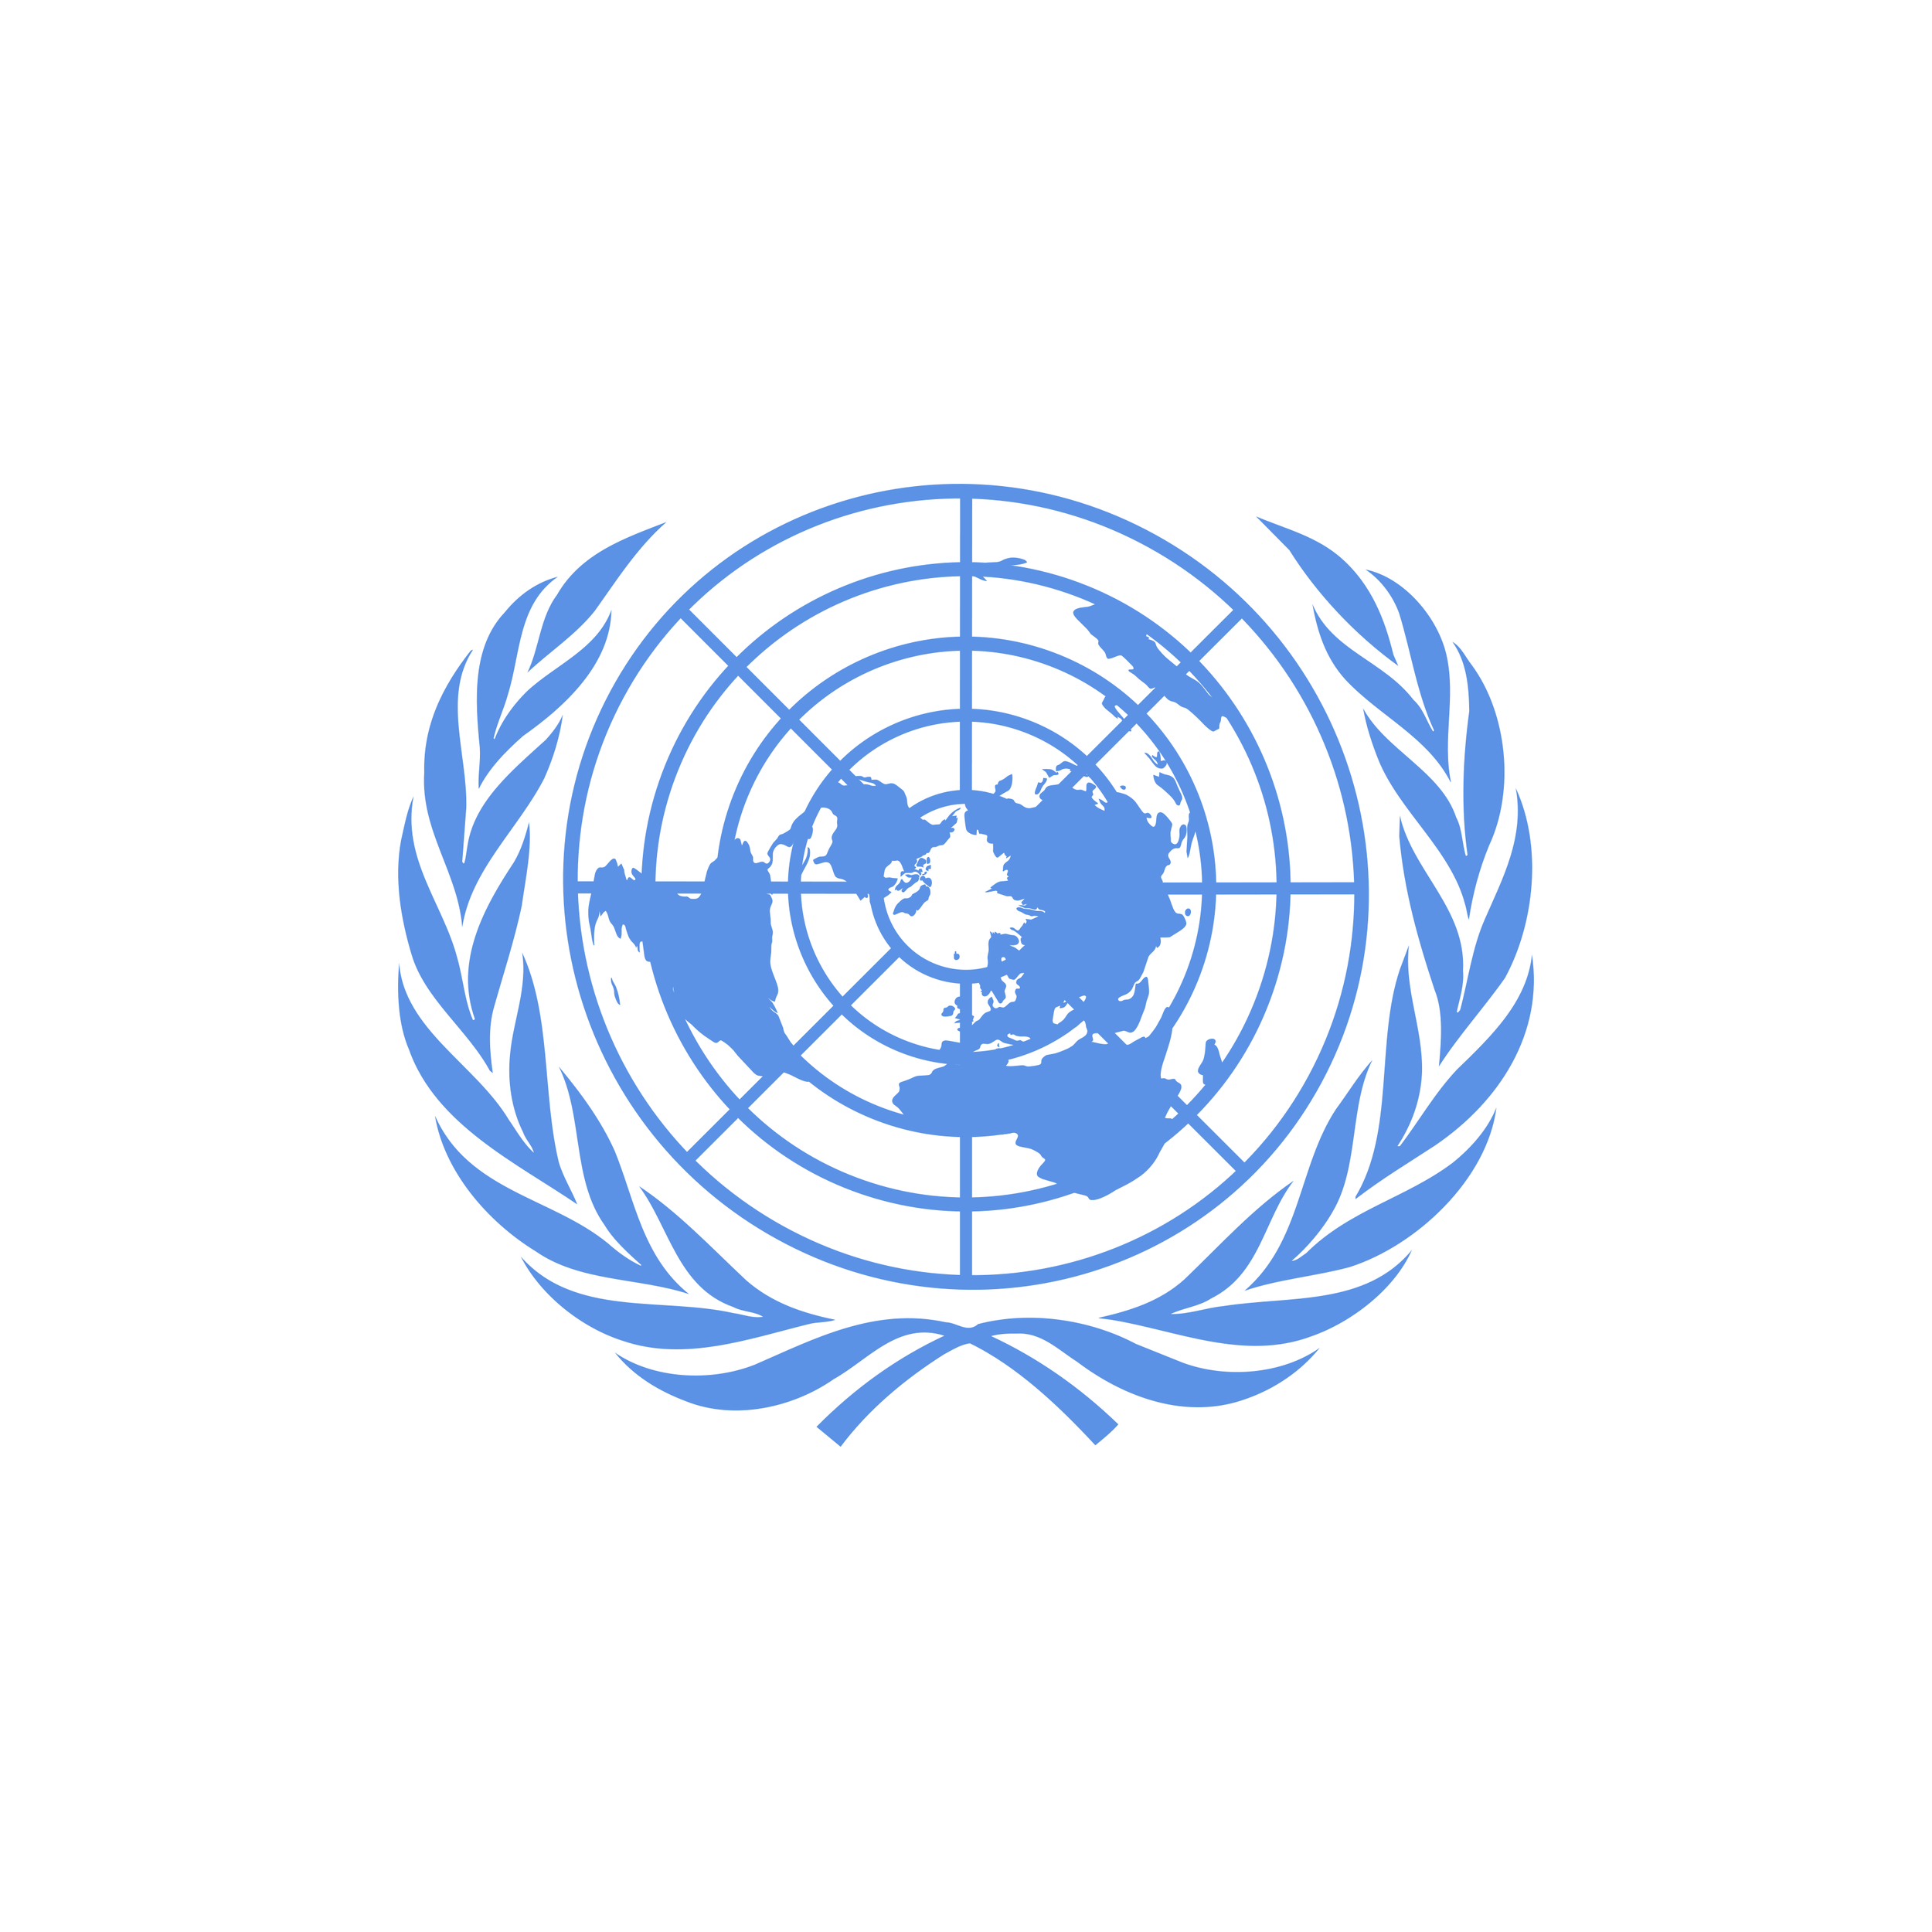 Международные социальные конвенции. Лого организация Объединенных наций (ООН). ЮНКТАД эмблема. Совет безопасности ООН лого. Совбез ООН эмблема.